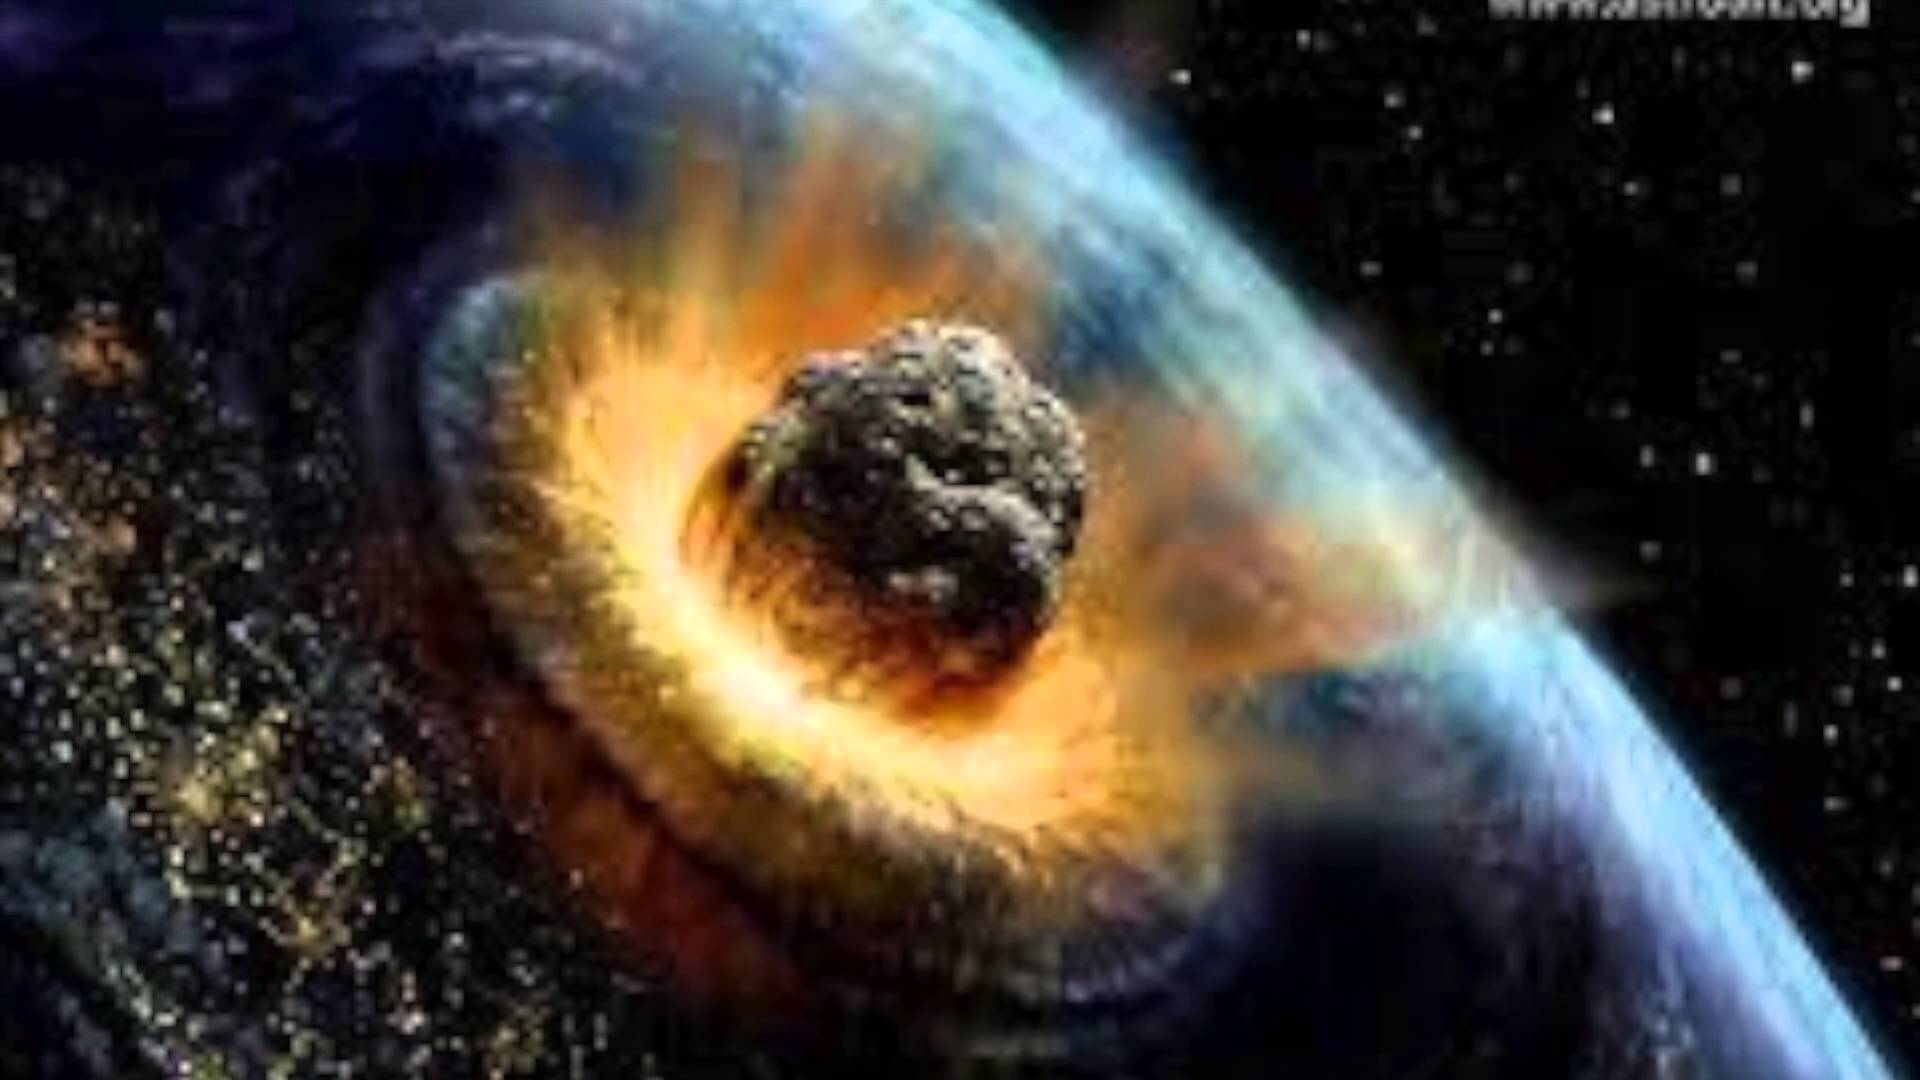 Οι κομήτες «γέννησαν» τη ζωή;